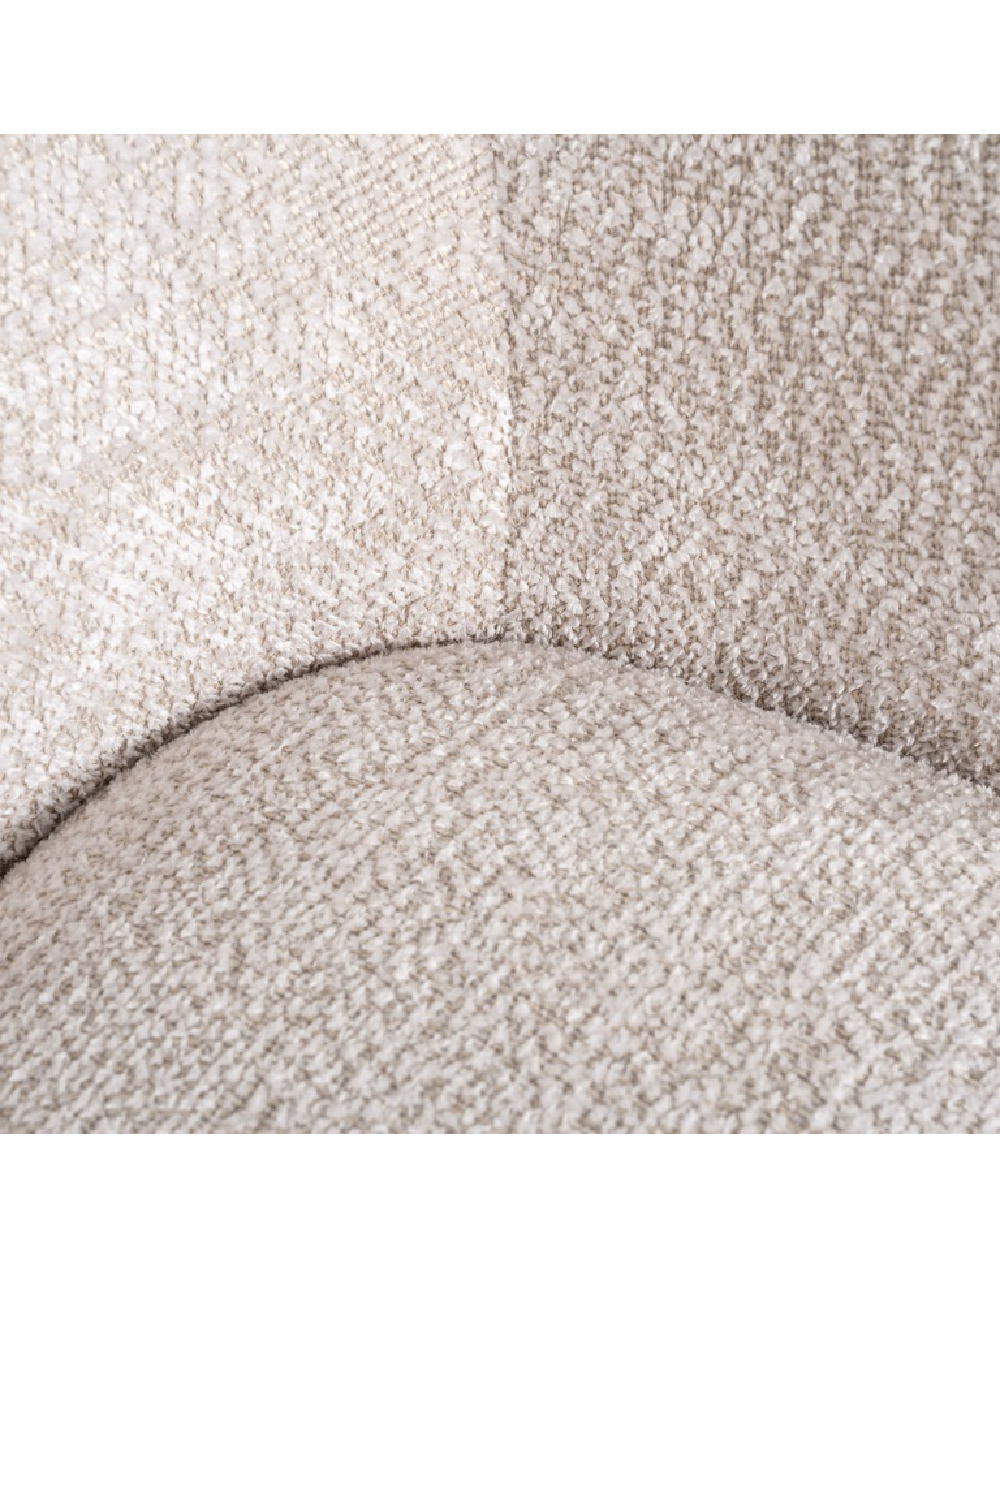 Upholstered Swivel Easy Chair | OROA Estelle | Oroa.com